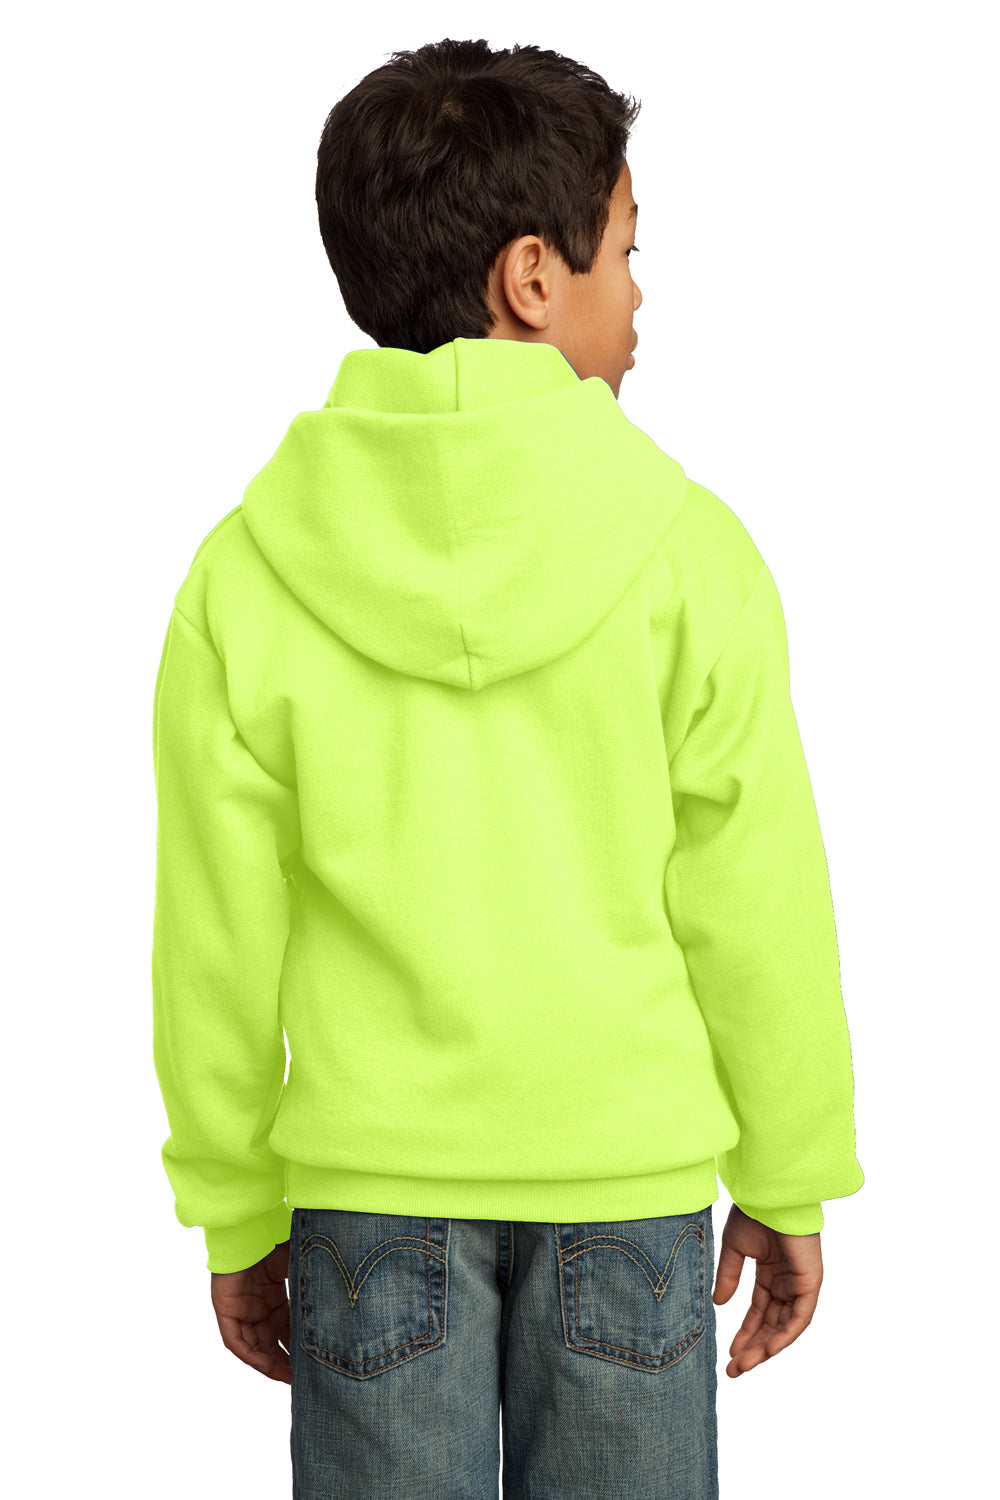 Port & Company PC90YH Youth Core Fleece Hooded Sweatshirt Hoodie Neon Yellow Back